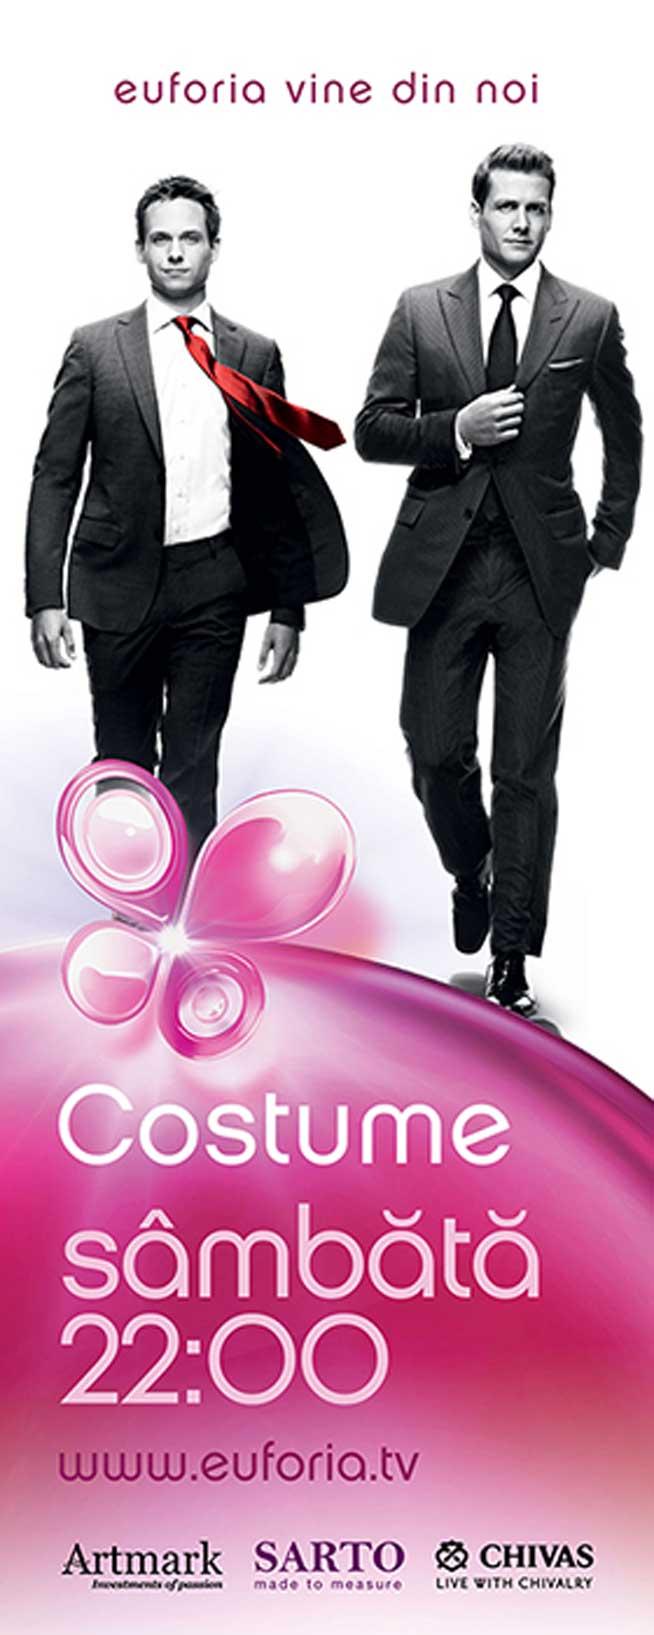 Serialul Costume, difuzat pe Euforia TV inspiră creatorii de modă 